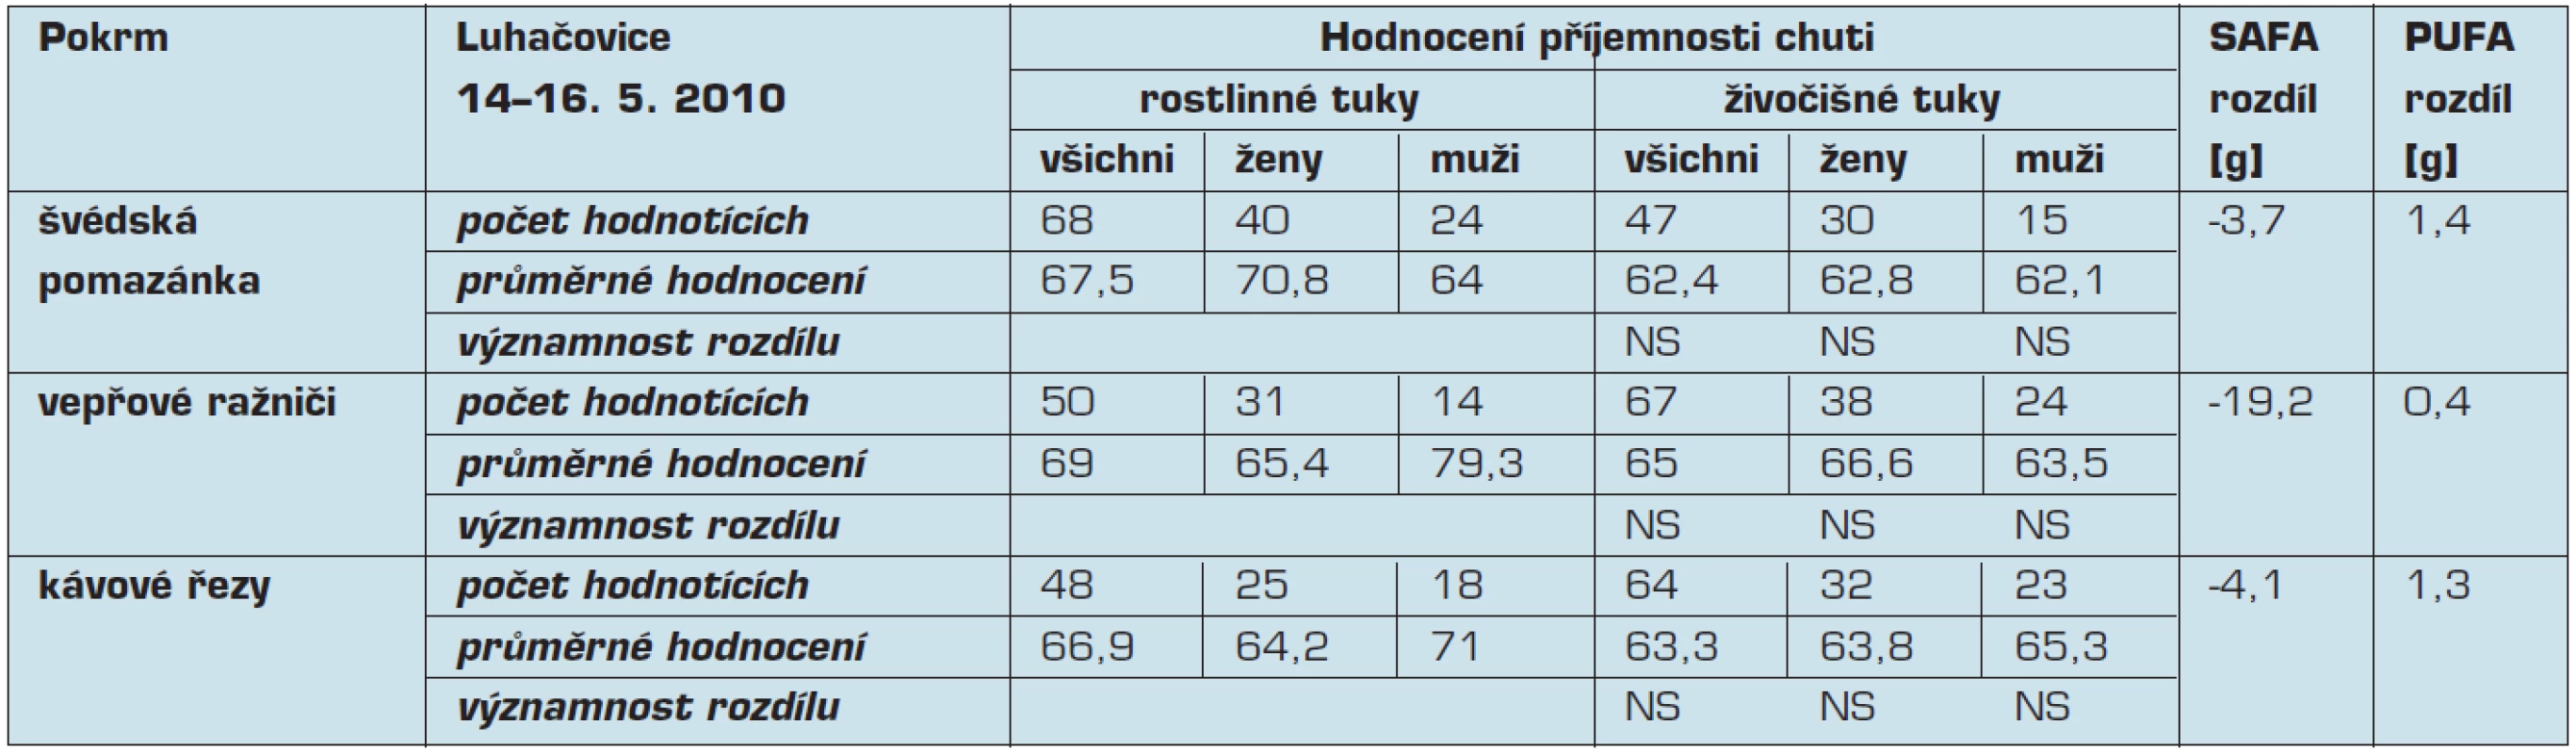 Hodnocení příjemnosti chuti, rozdíly obsahu mastných kyselin v rámci víkendového semináře pořádaného v Luhačovicích